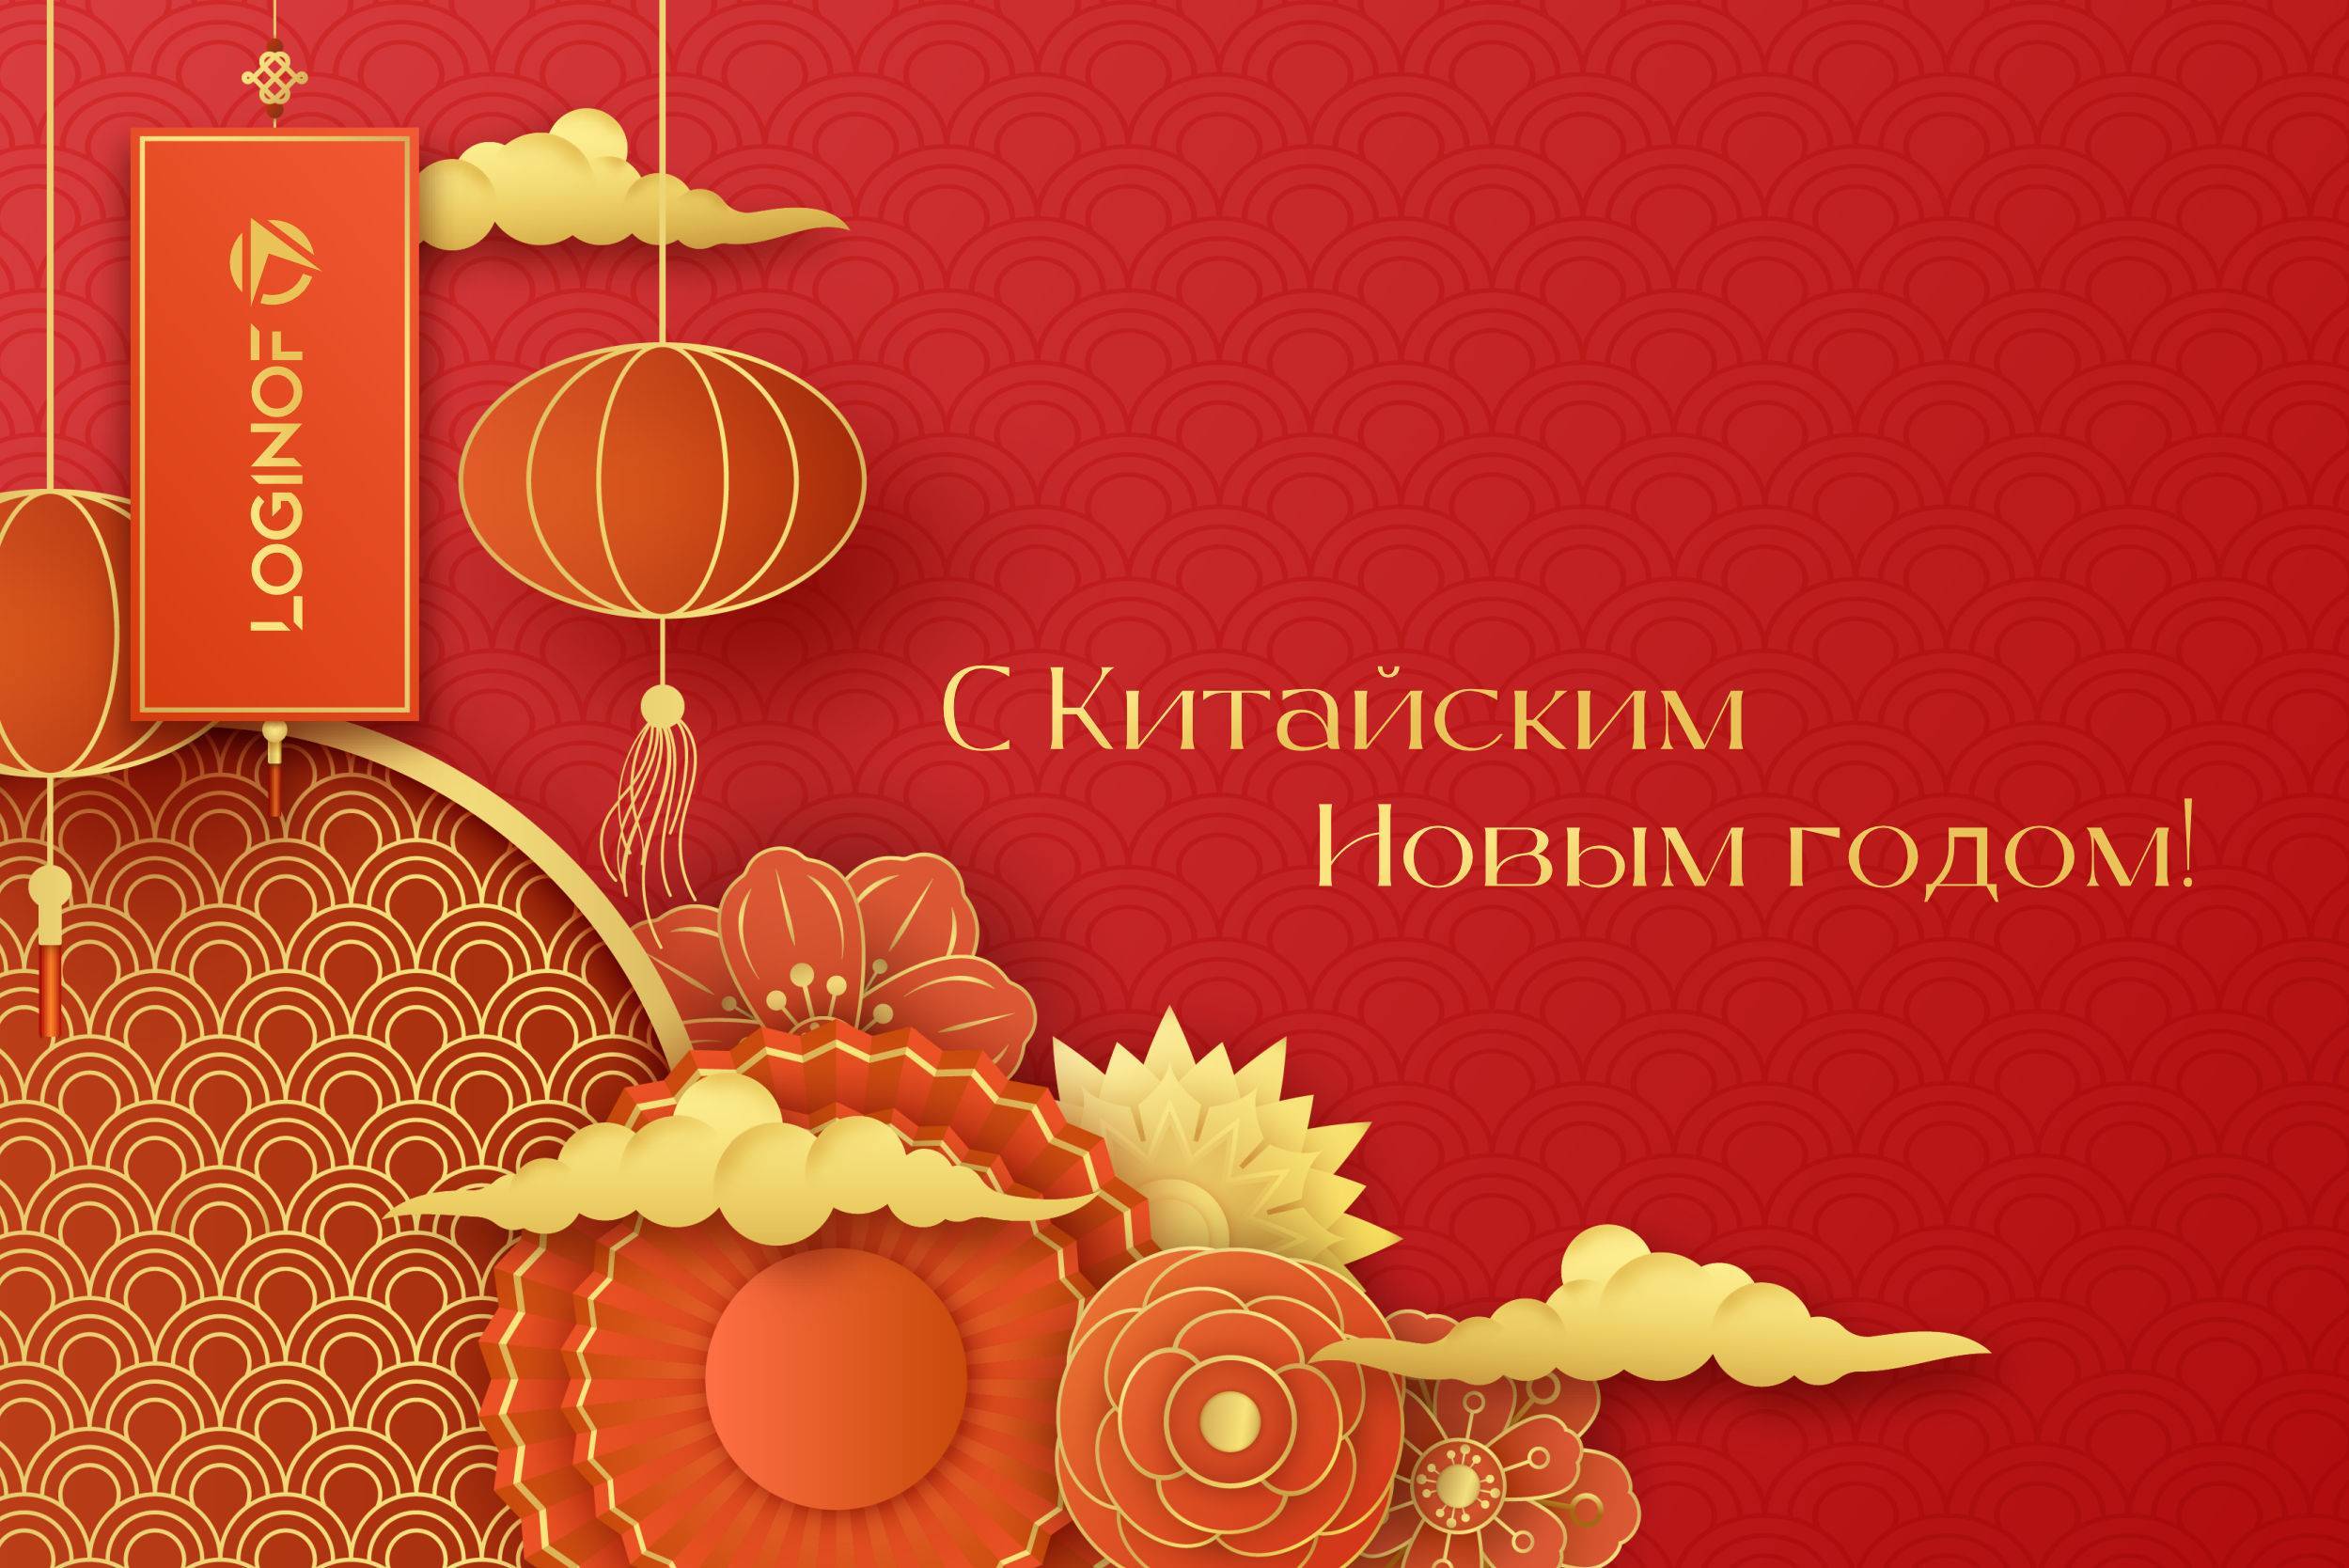 Loginof поздравляет с Китайским Новым годом